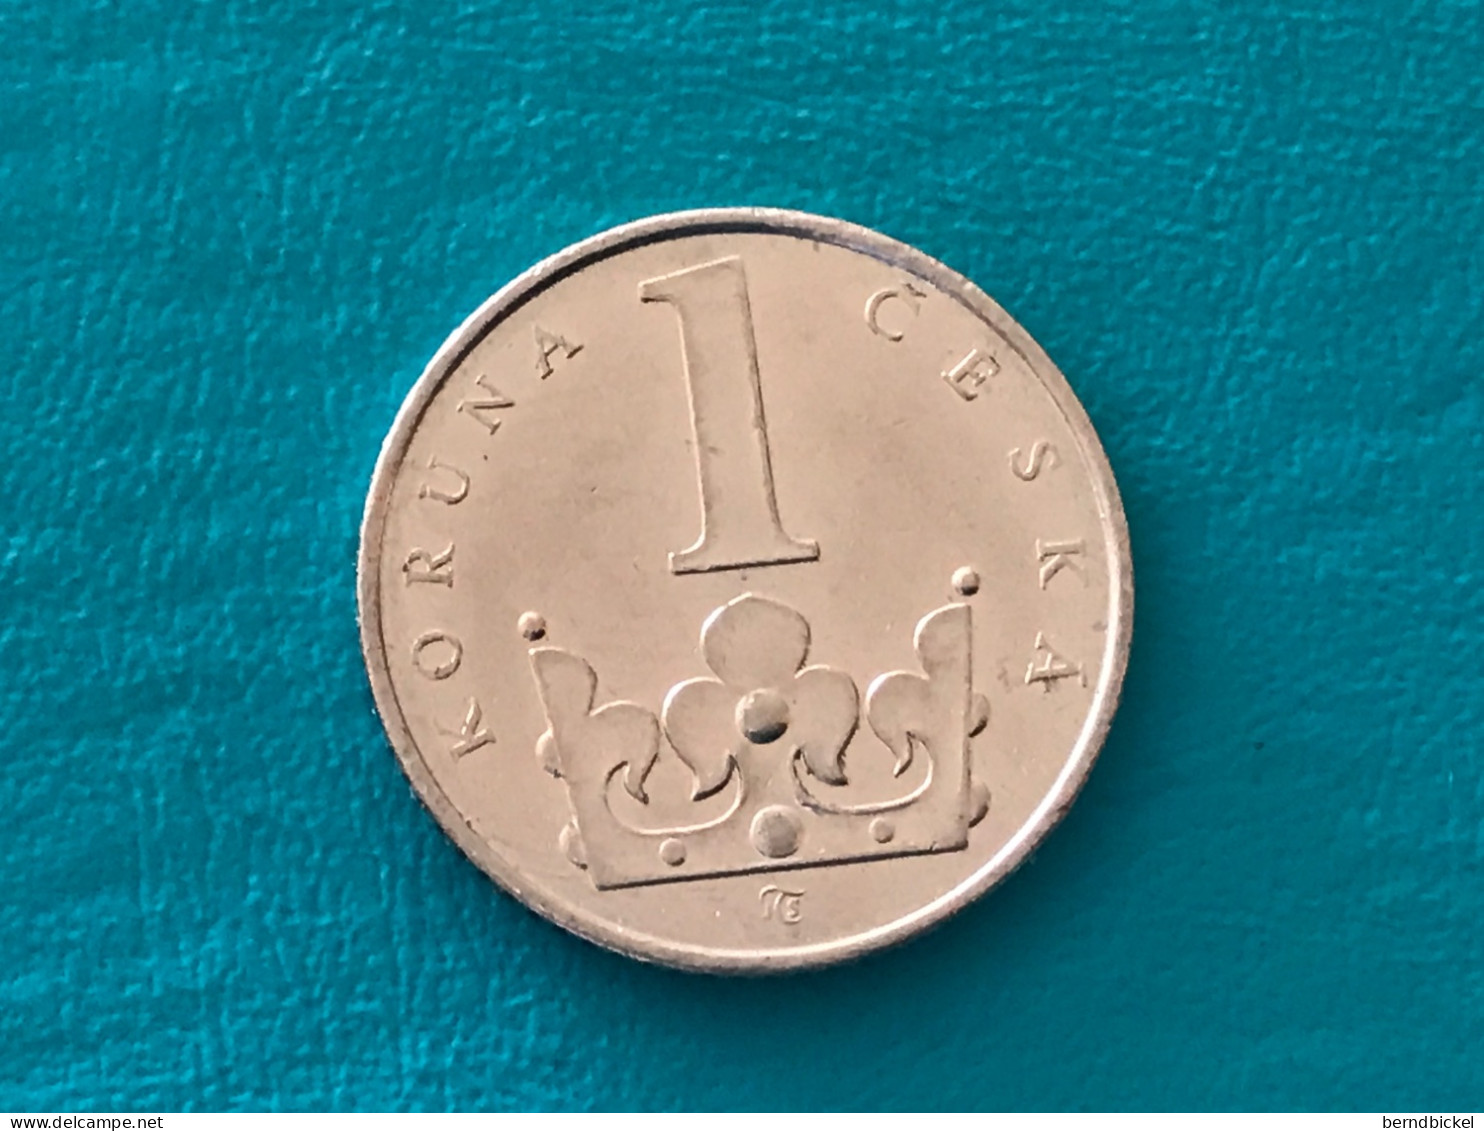 Münze Münzen Umlaufmünze Tschechien 1 Koruna 1995 - Tsjechië